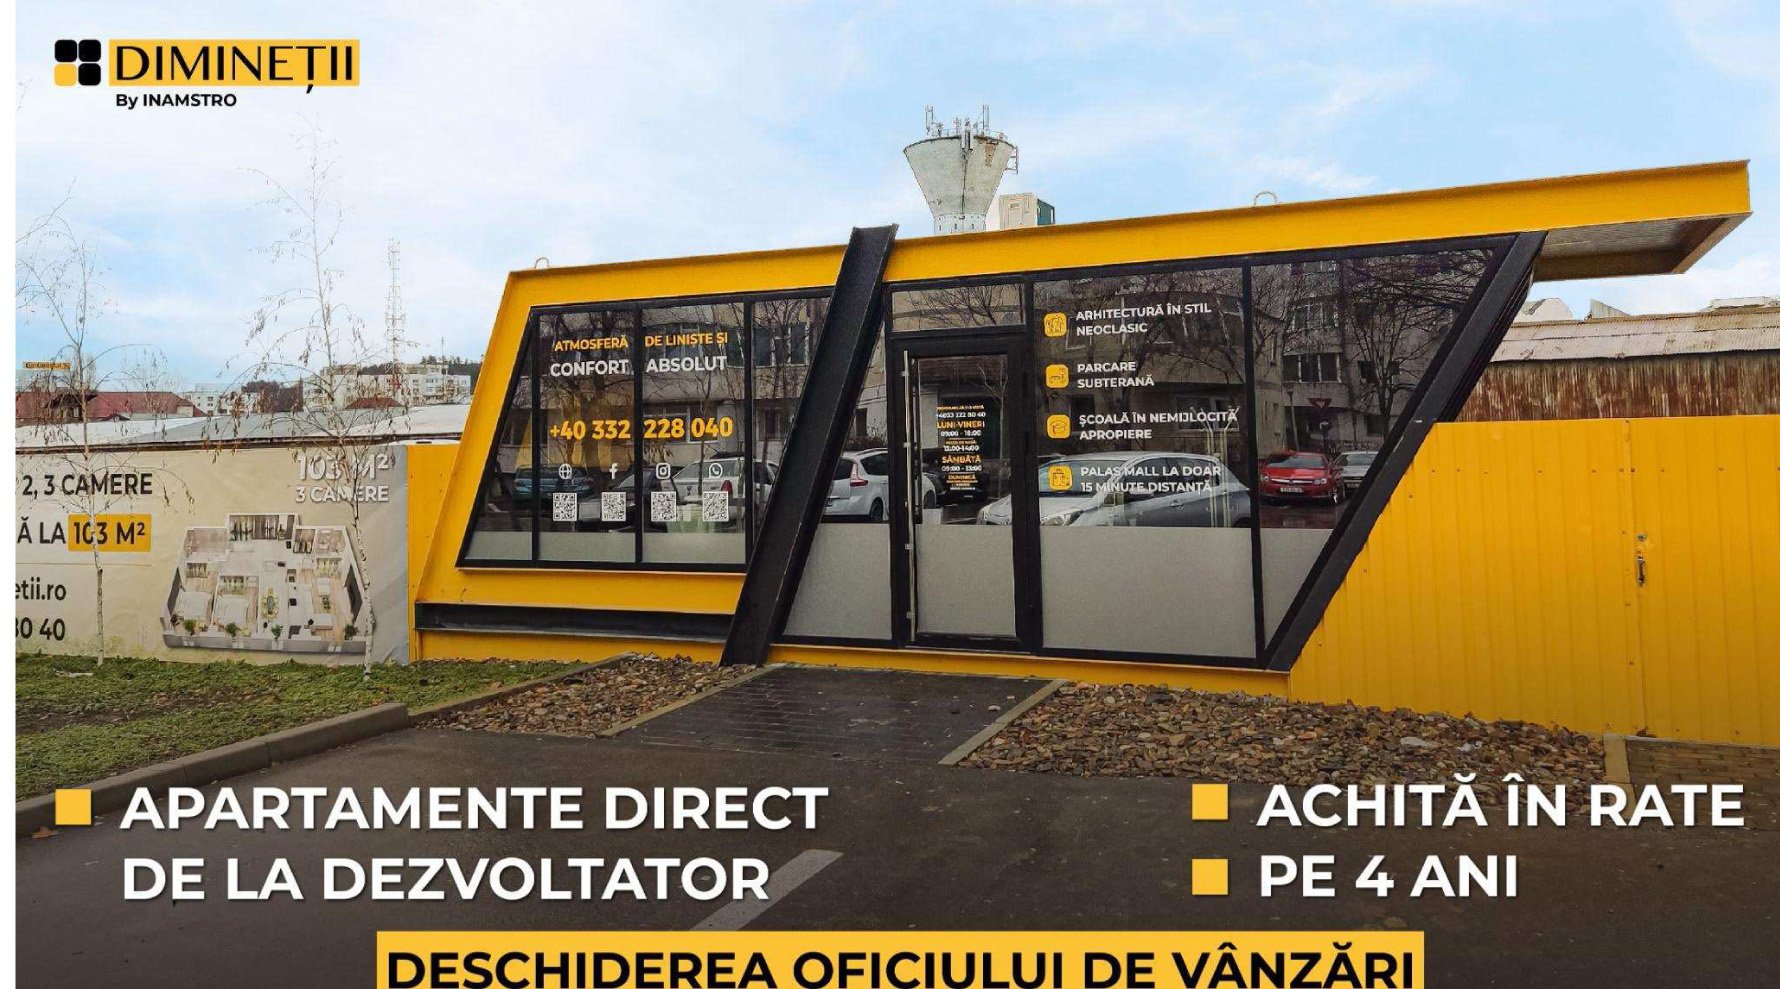  Deschiderea oficiului de vânzări pentru ansamblul rezidențial DIMINEȚII (P)